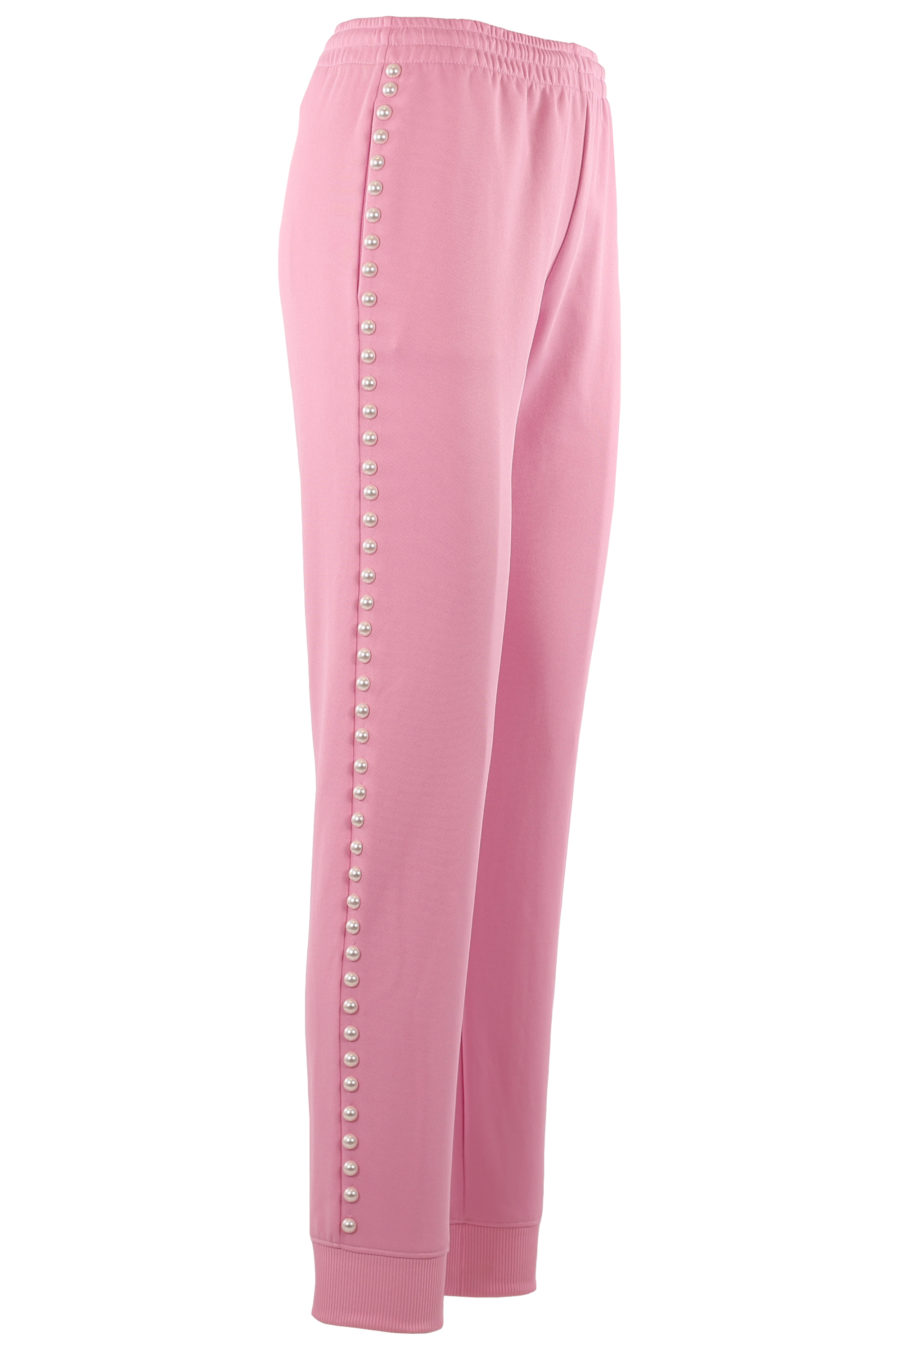 Pantalón de color rosa con perlas - 52e7920ccd78b60698d7d133fe56f0ecefa44921